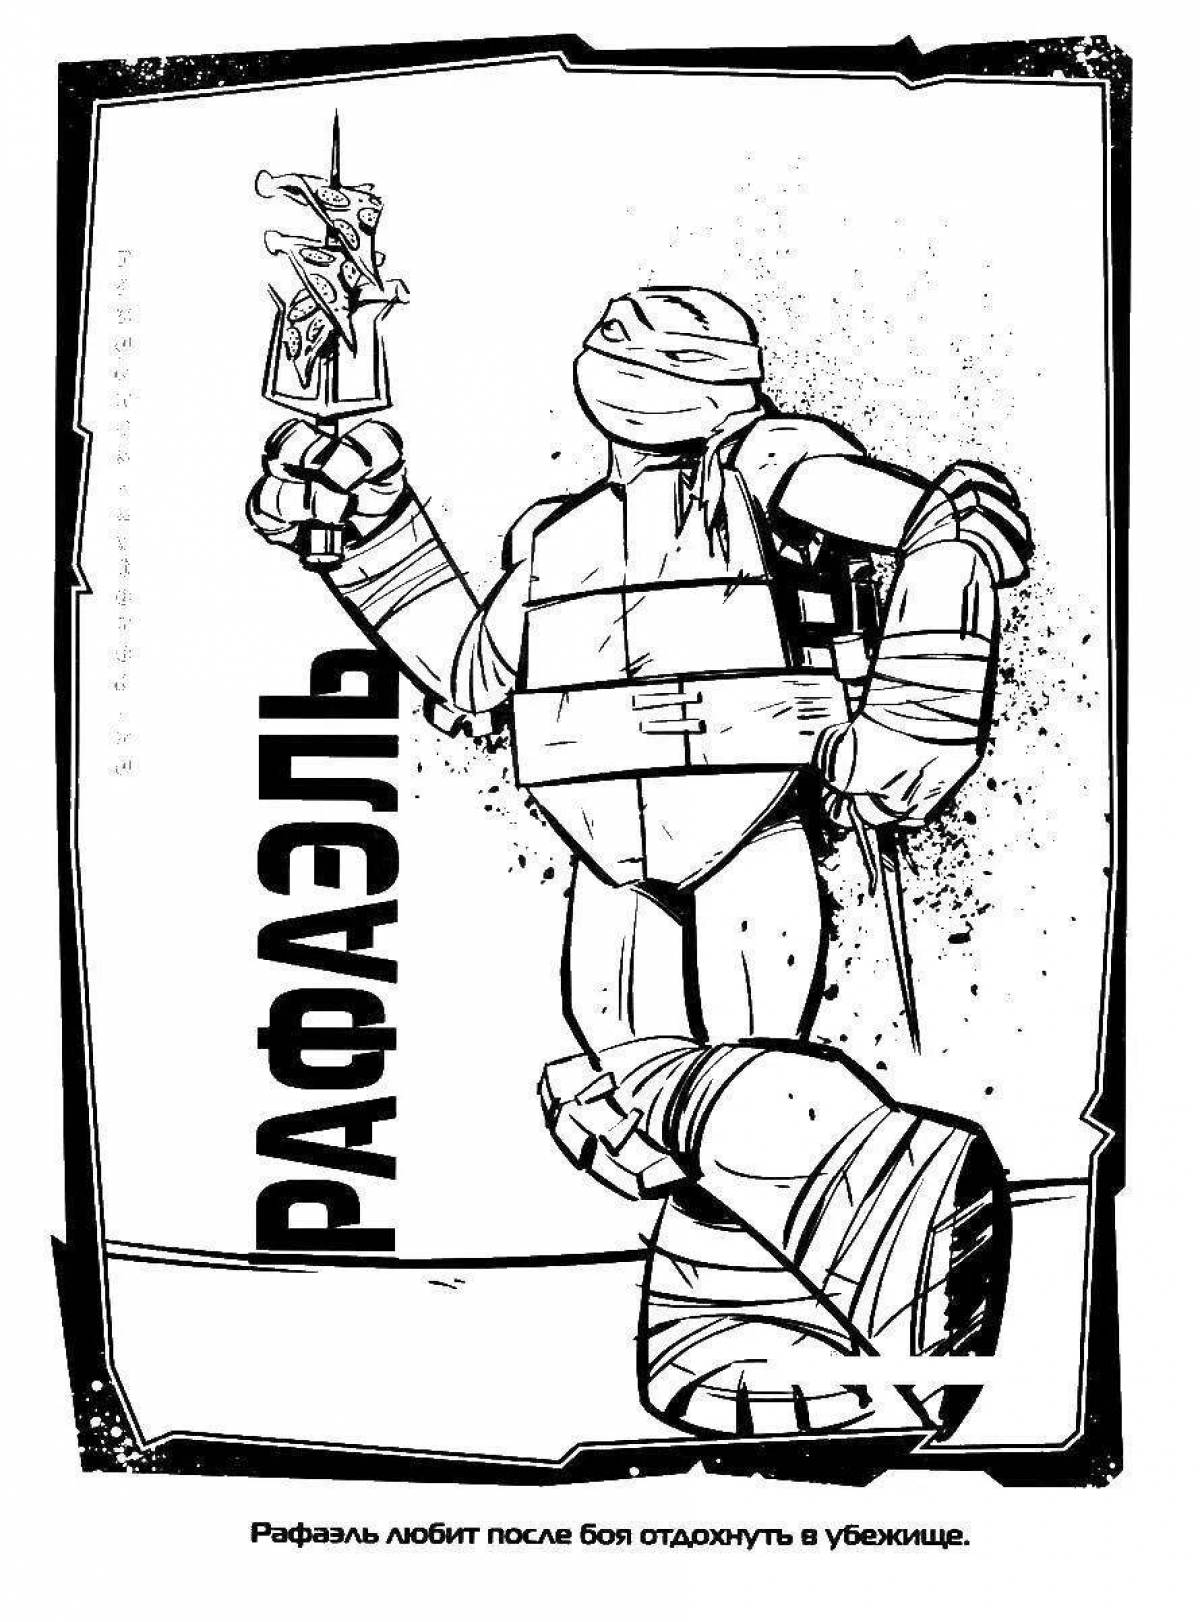 Raphael's lovely Teenage Mutant Ninja Turtles coloring page